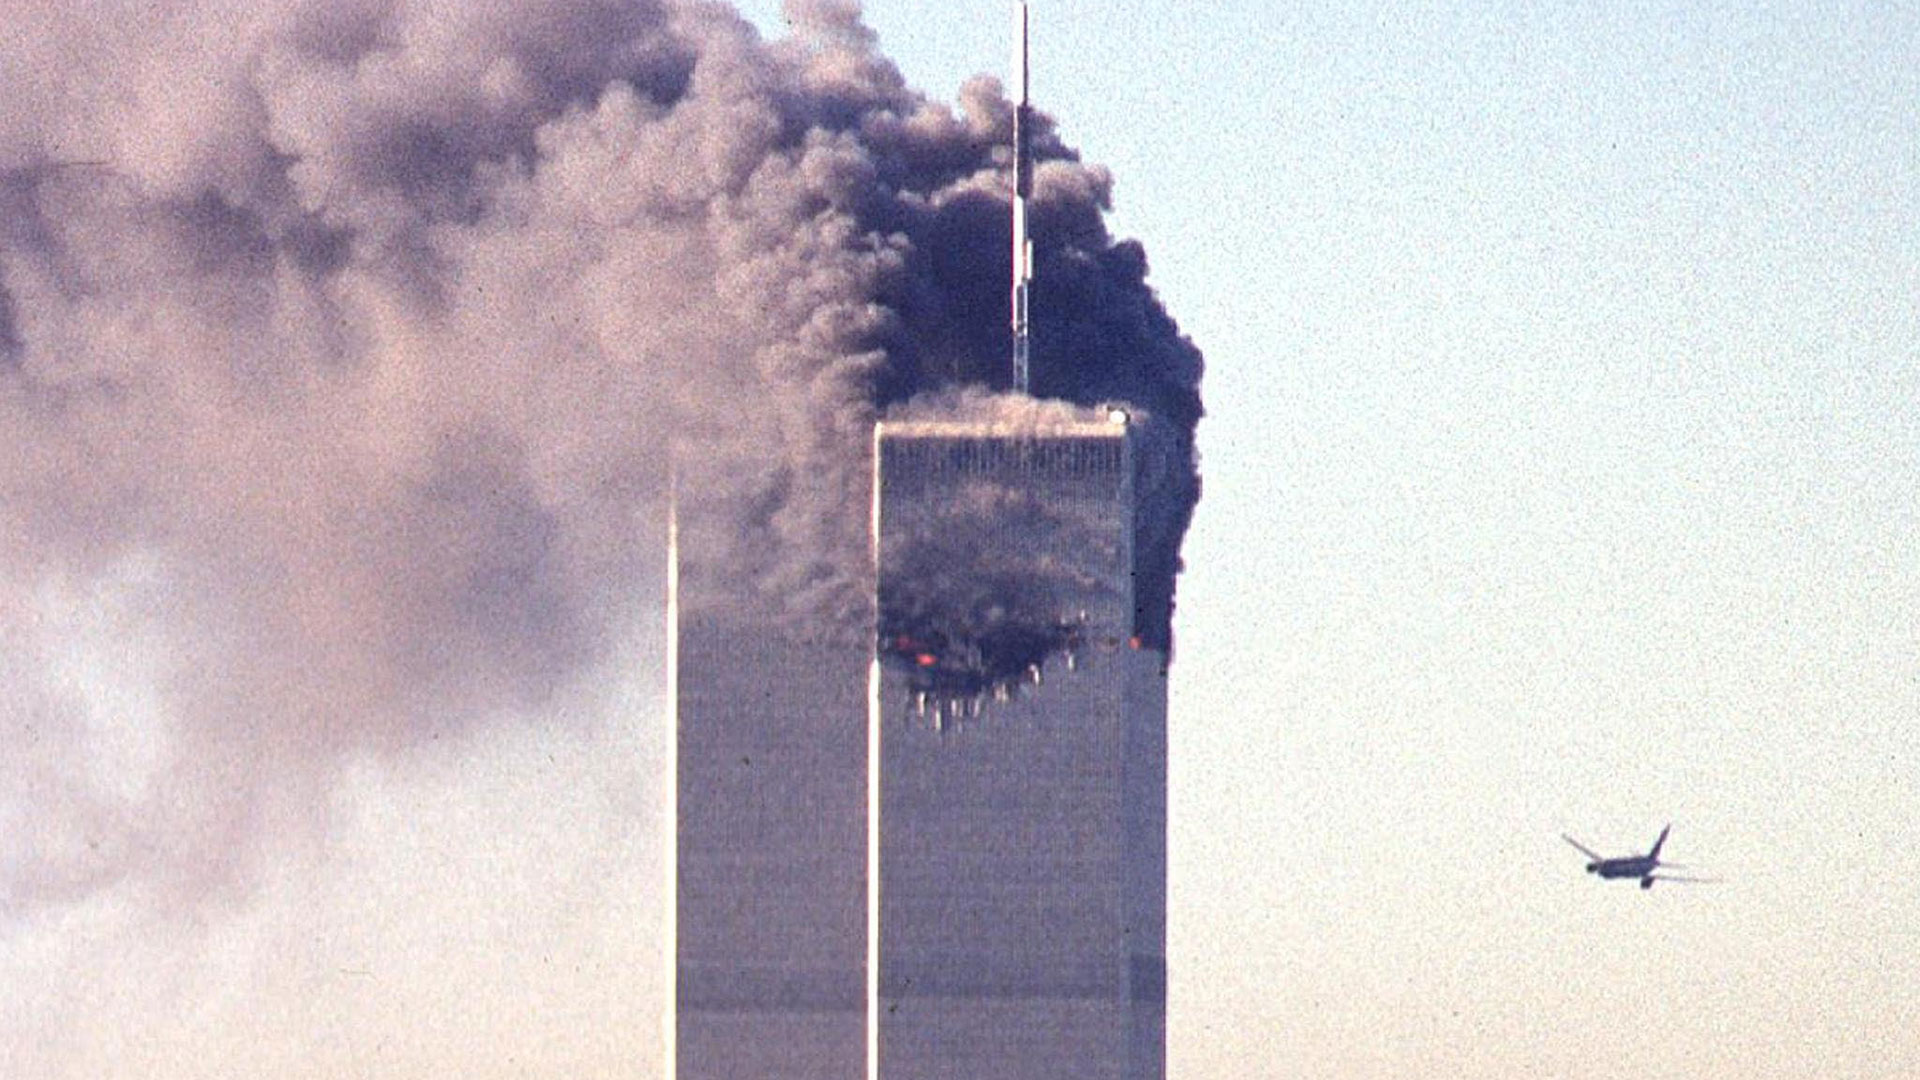 El Boeing del vuelo de United Airlines 175, piloteado por Marwan al-Shehhi, a punto de estrellarse contra la Torre Sur del World Trade Center a las 9:03:42 del 11 de septiembre (AFP)